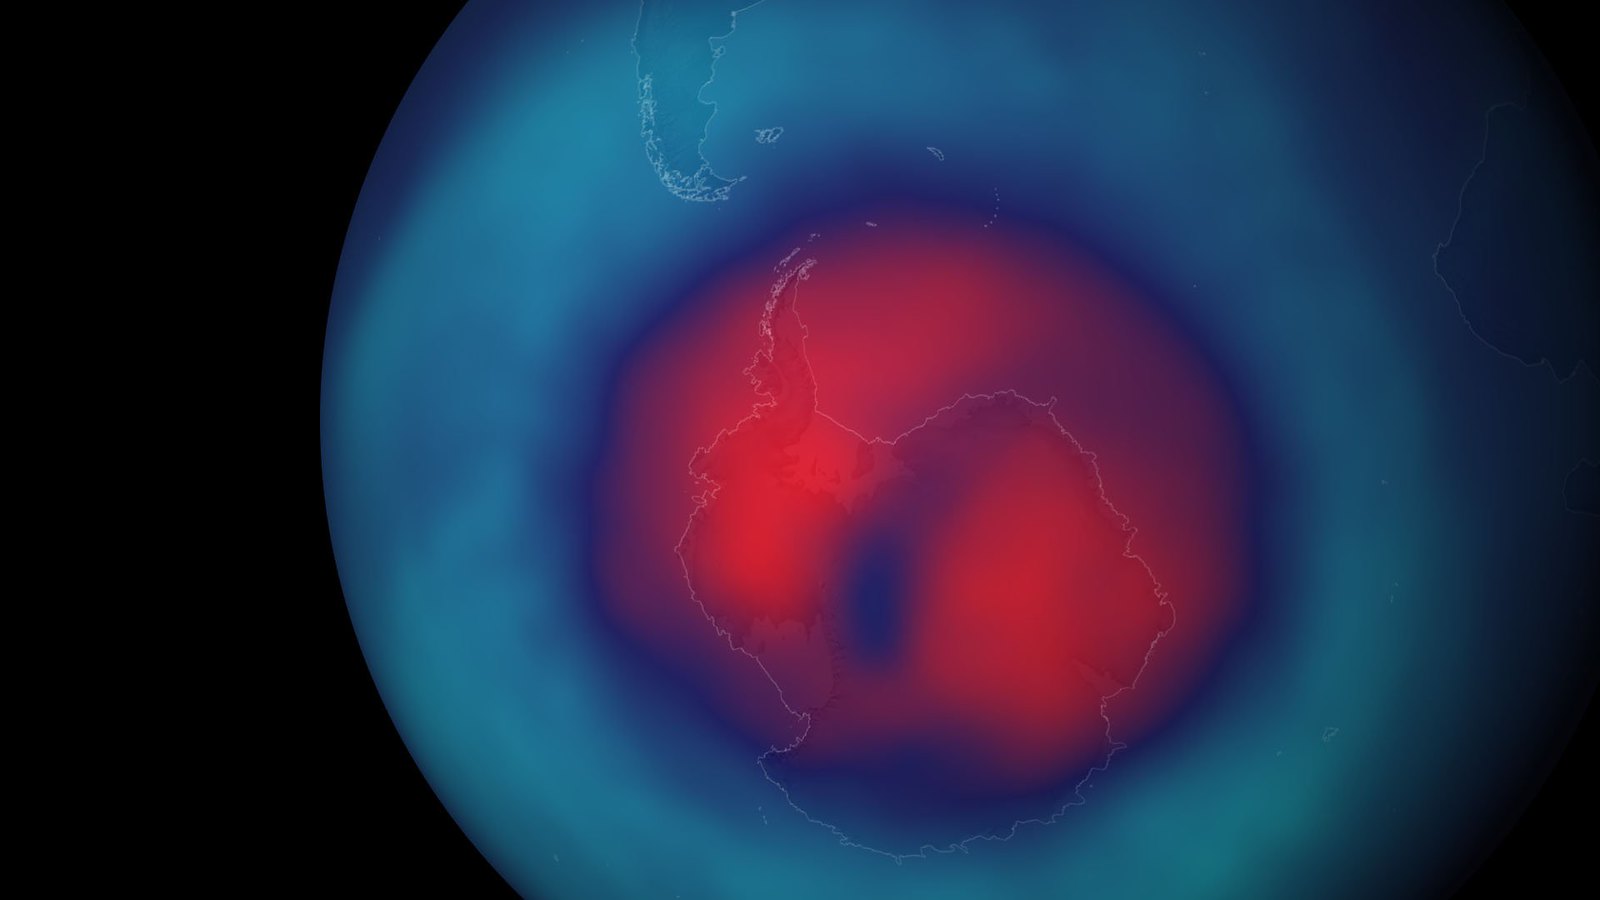 ויזואליזציה של החור בשכבת האוזון מעל הקוטב הדרומי. החדשות הטובות: החור הולך וקטן! קרדיט: Stuart_Rankin